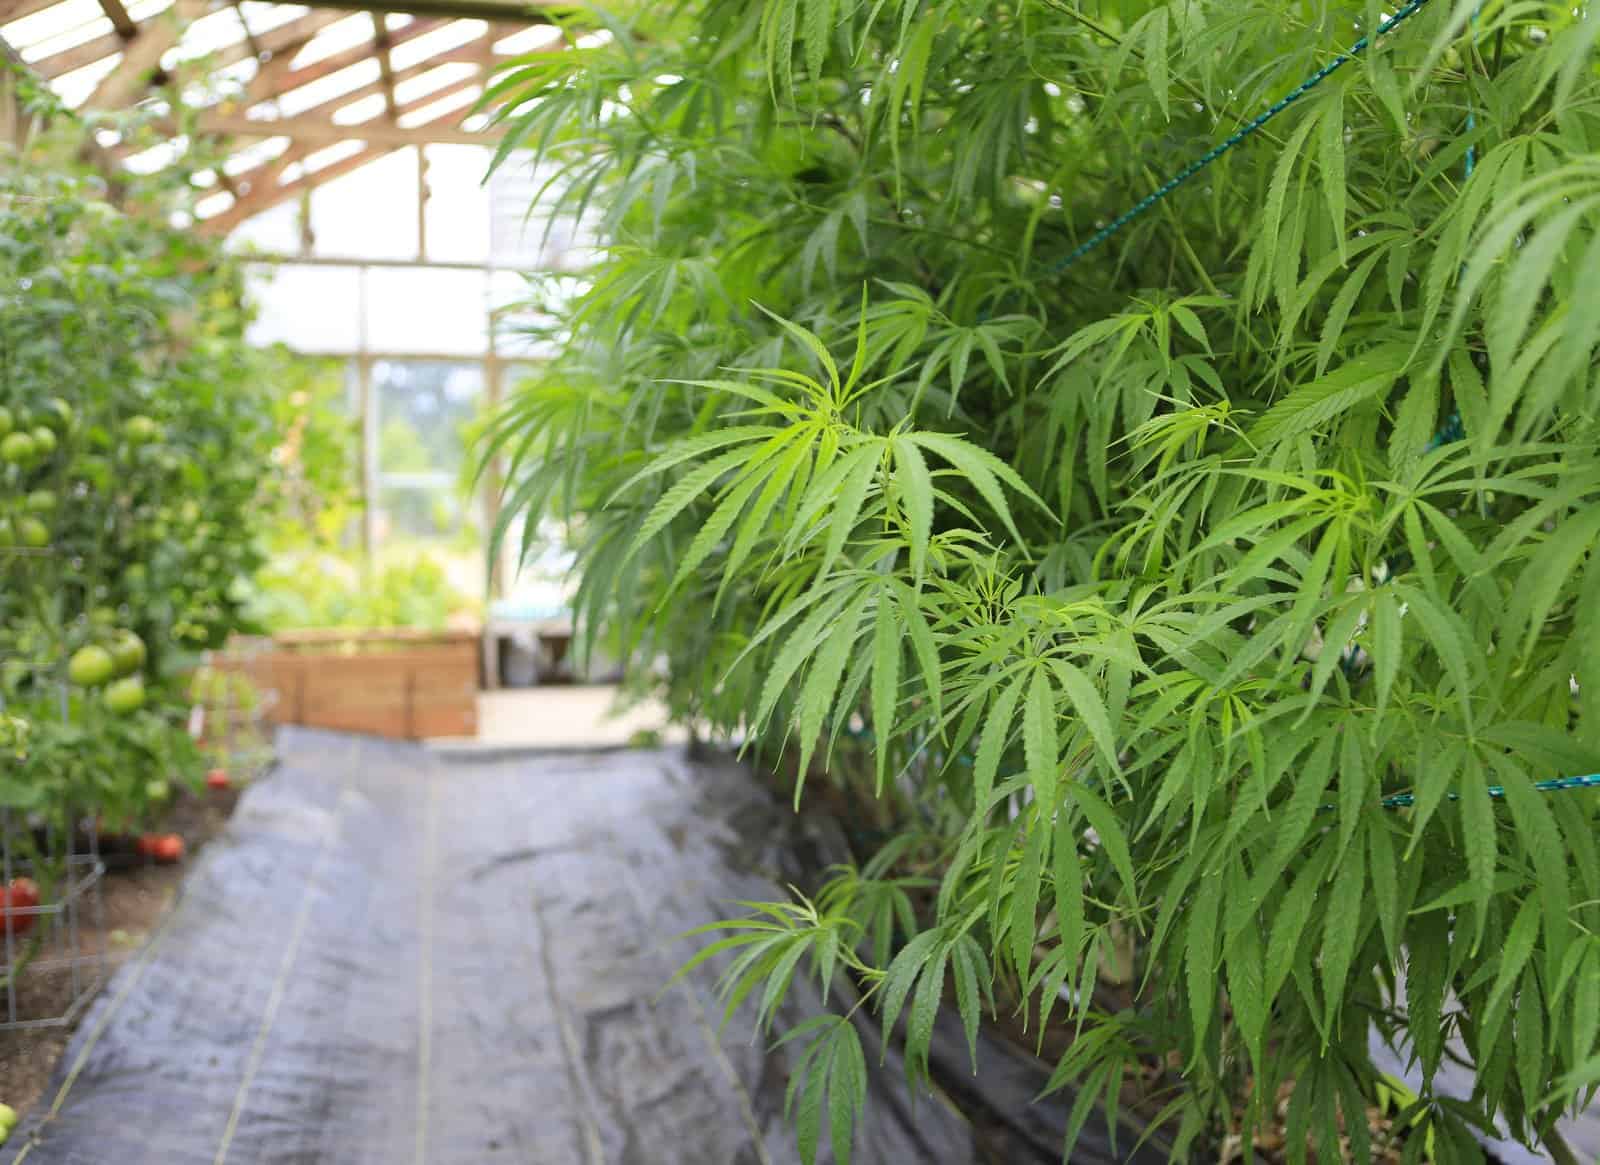 Grow marijuana indoors without lights